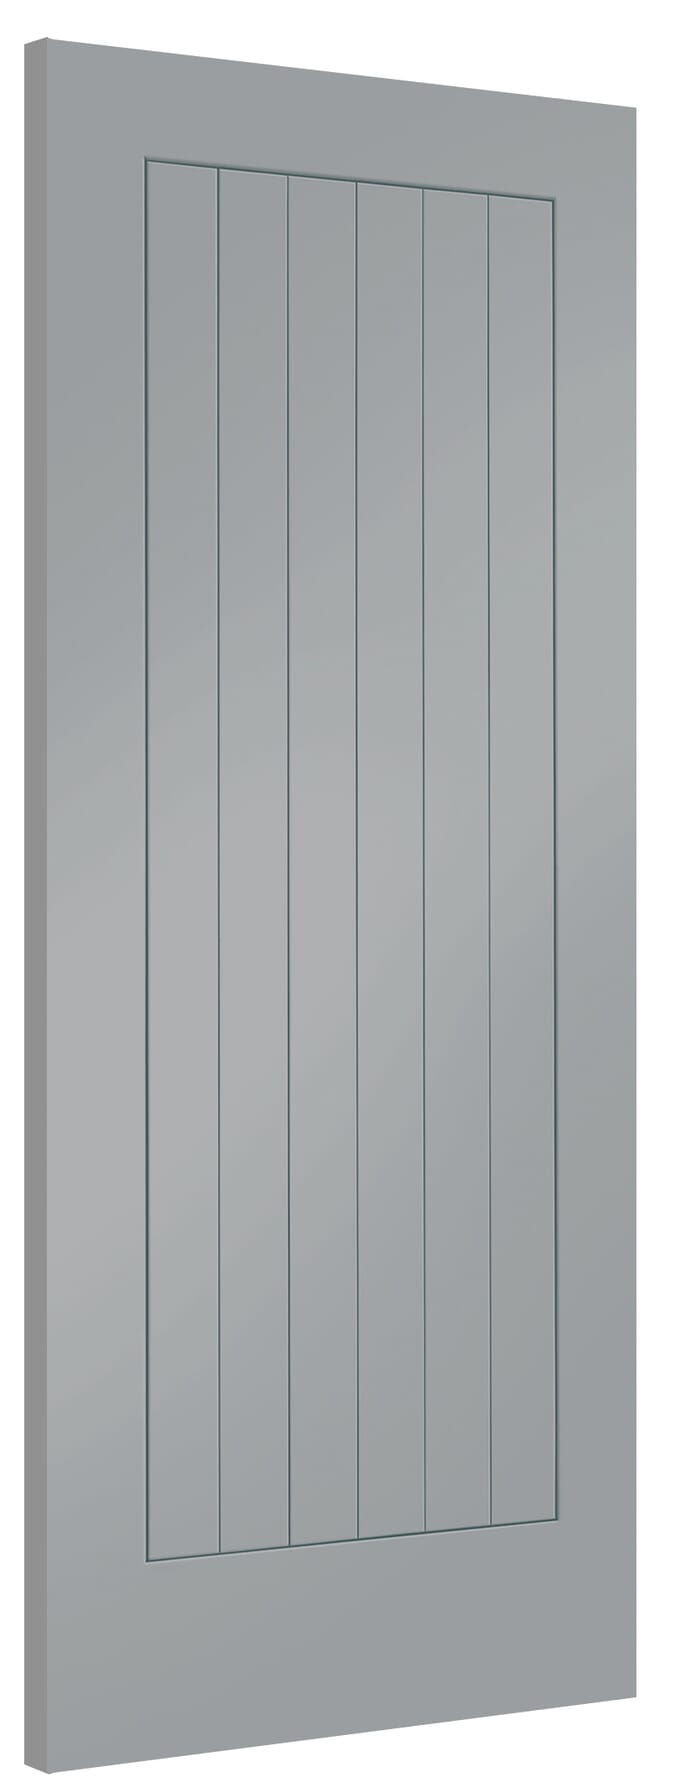 762x1981x35mm (30") Suffolk Storm Grey Internal Doors